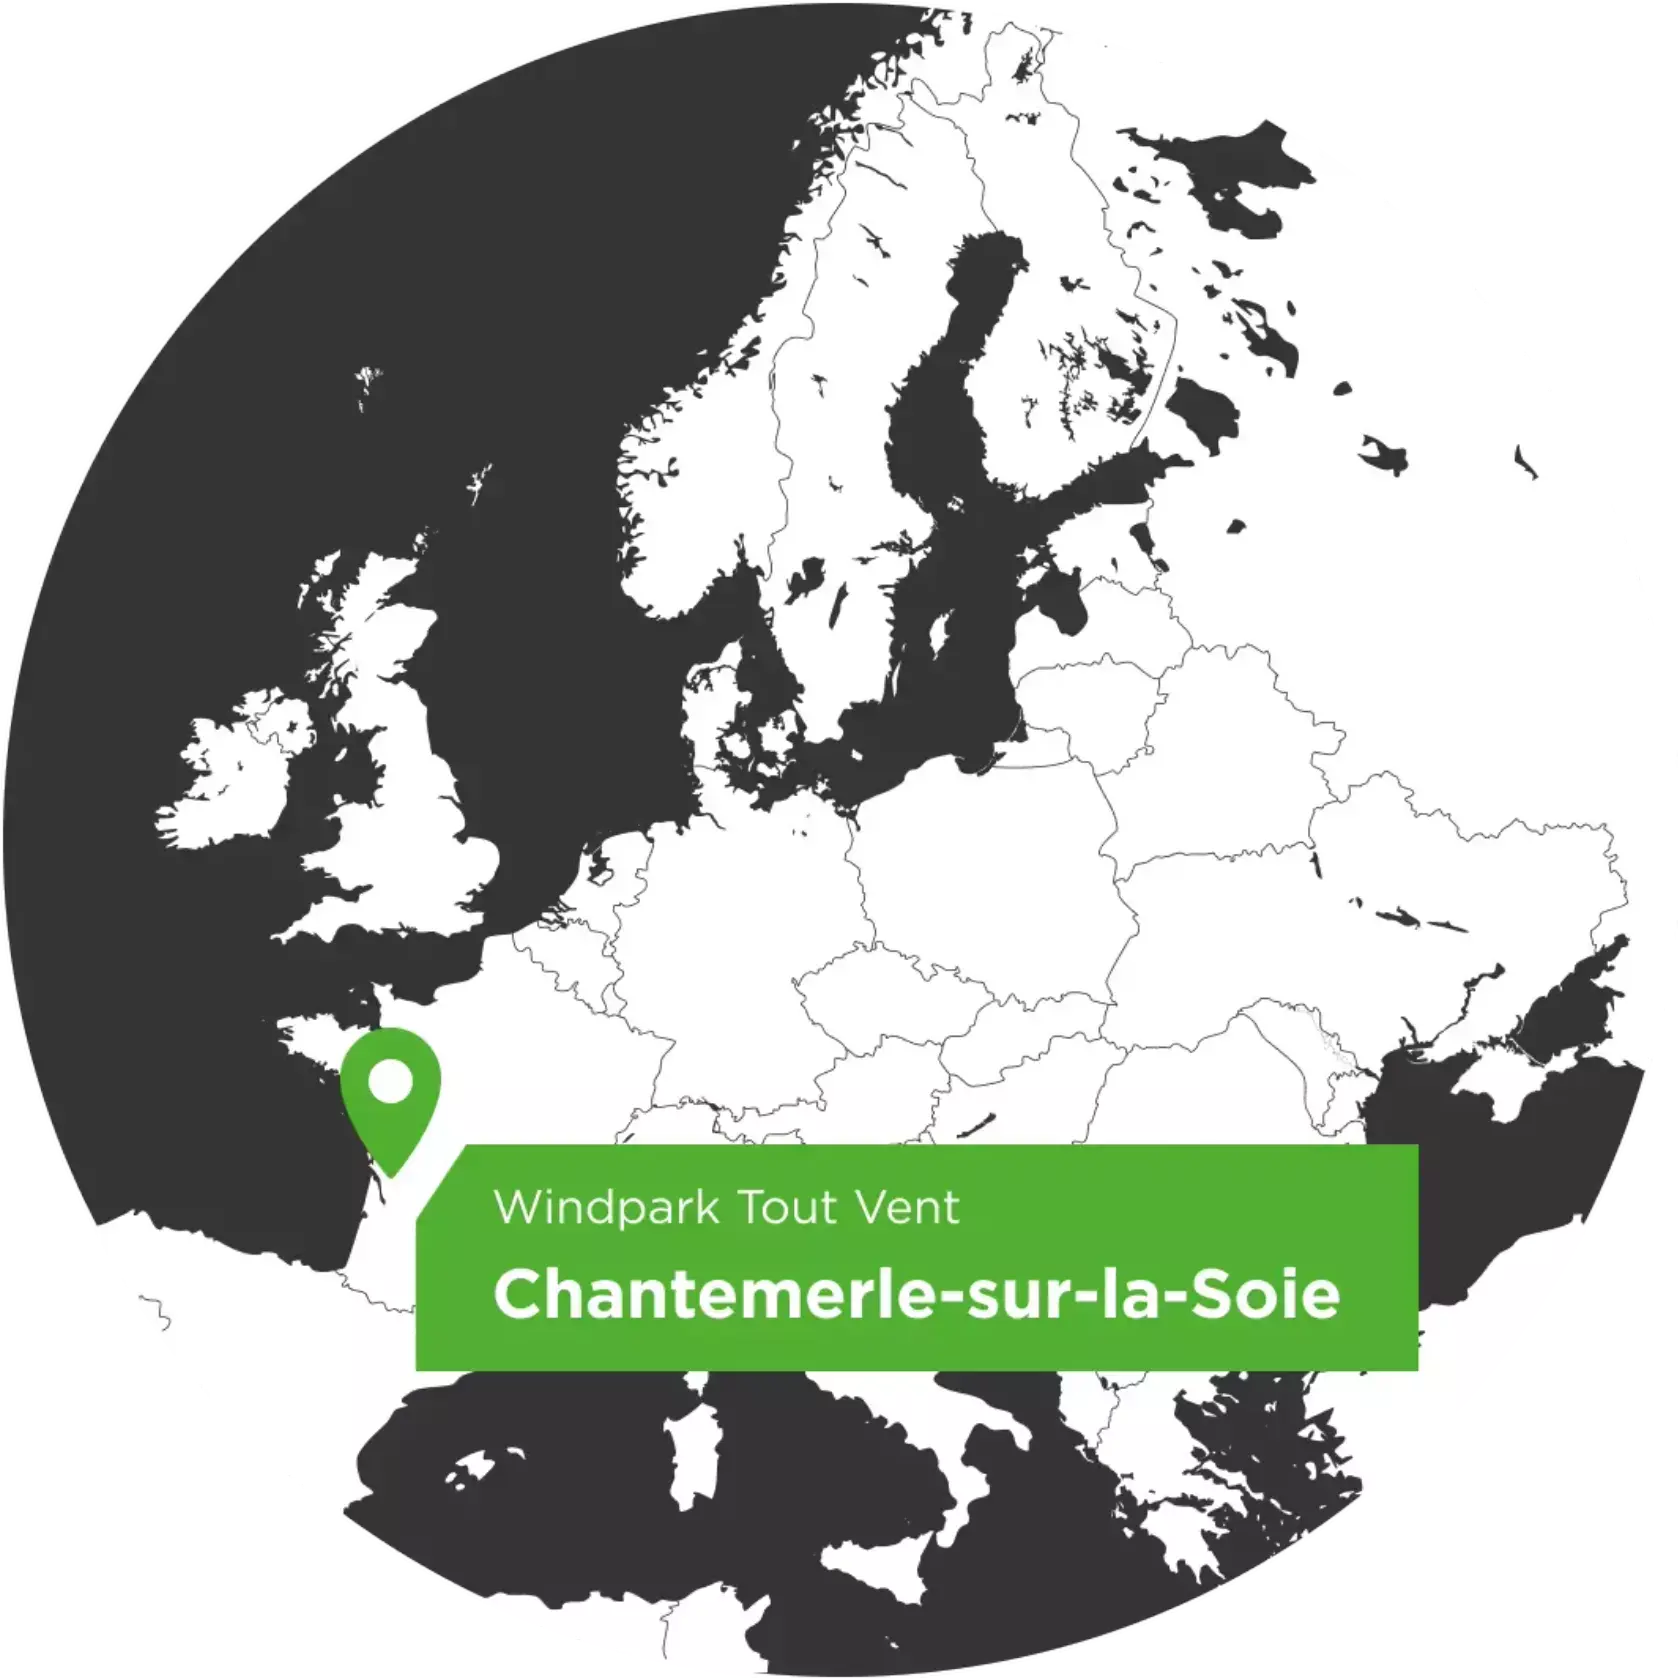 Europakarte mit dem Standortpfeil für den Windpark Tout Vent